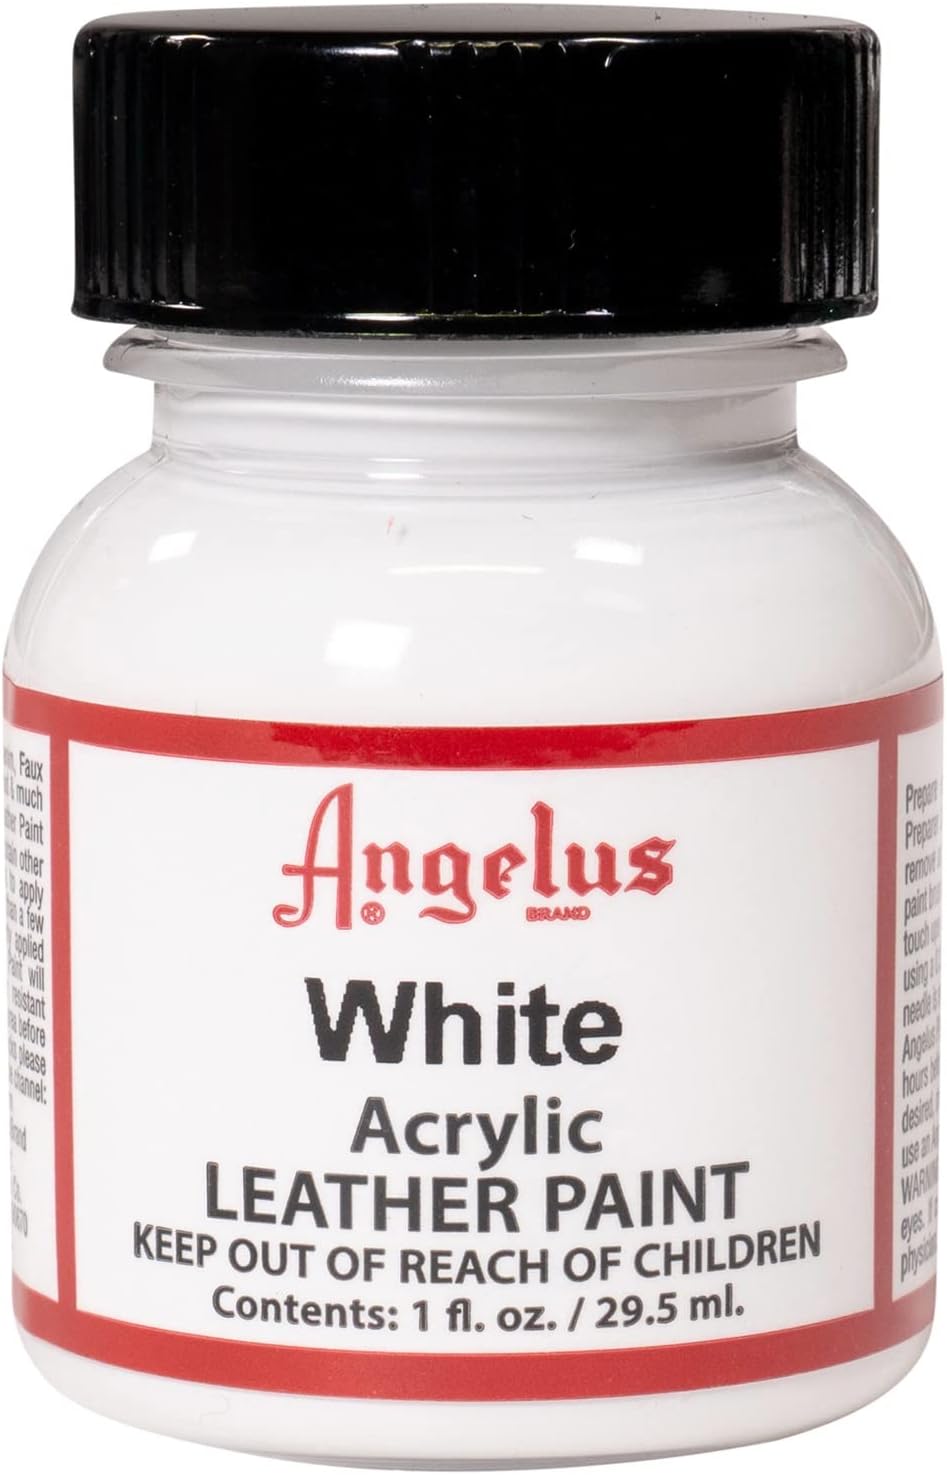 Angelus Acrylic Leather Paint, White, 1 oz